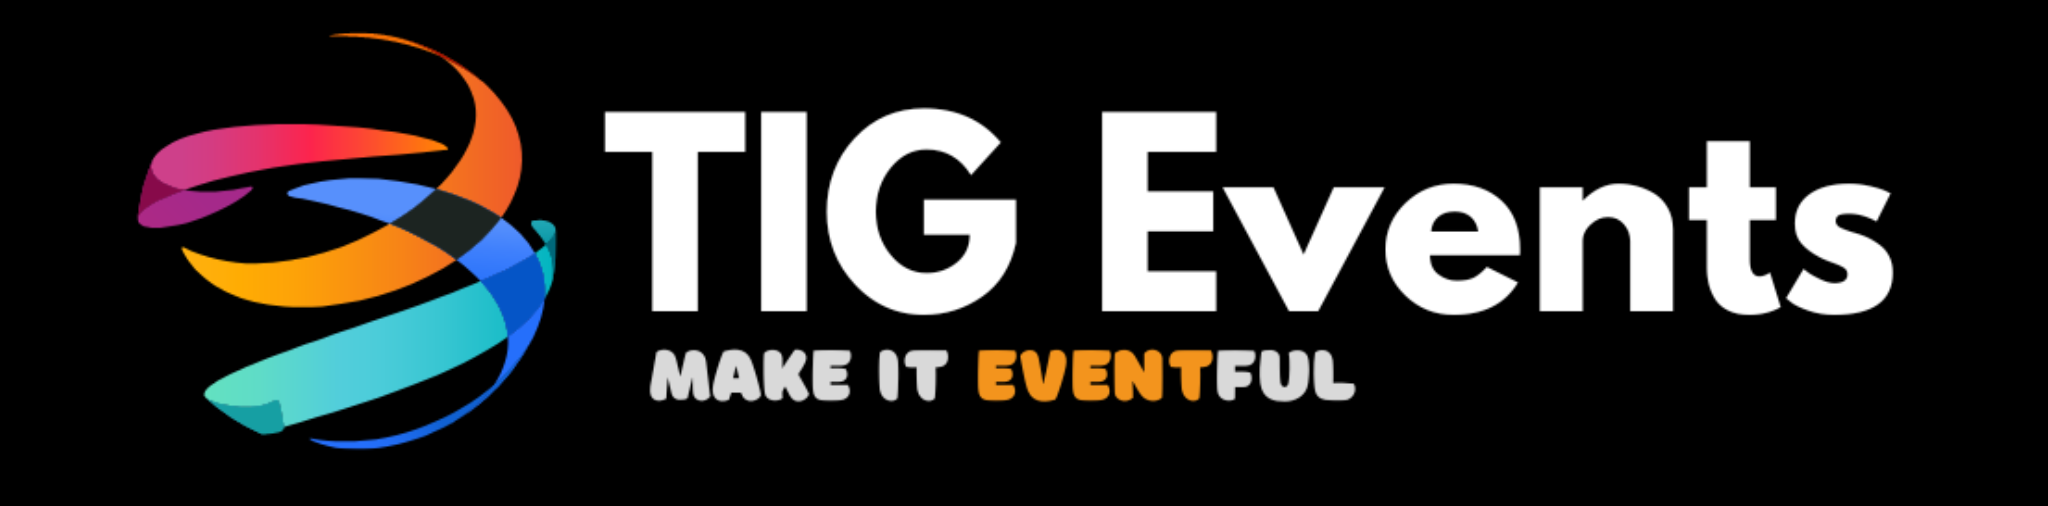 TIG Events Ltd